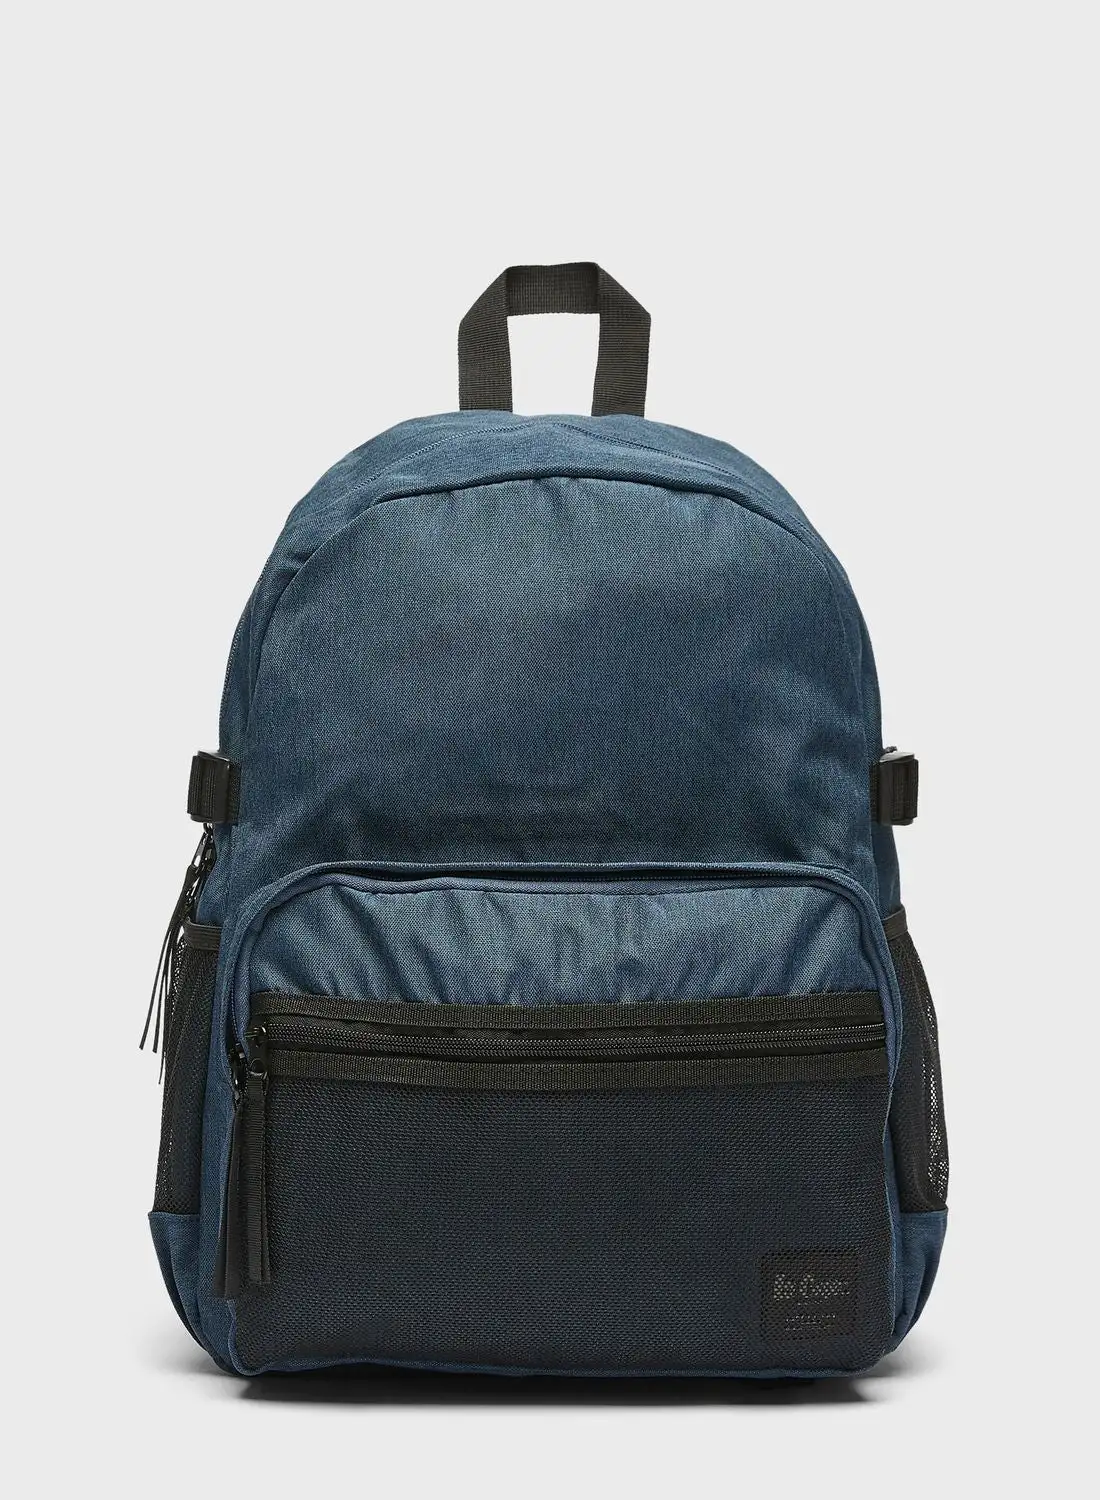 Lee Cooper Essential Backpack